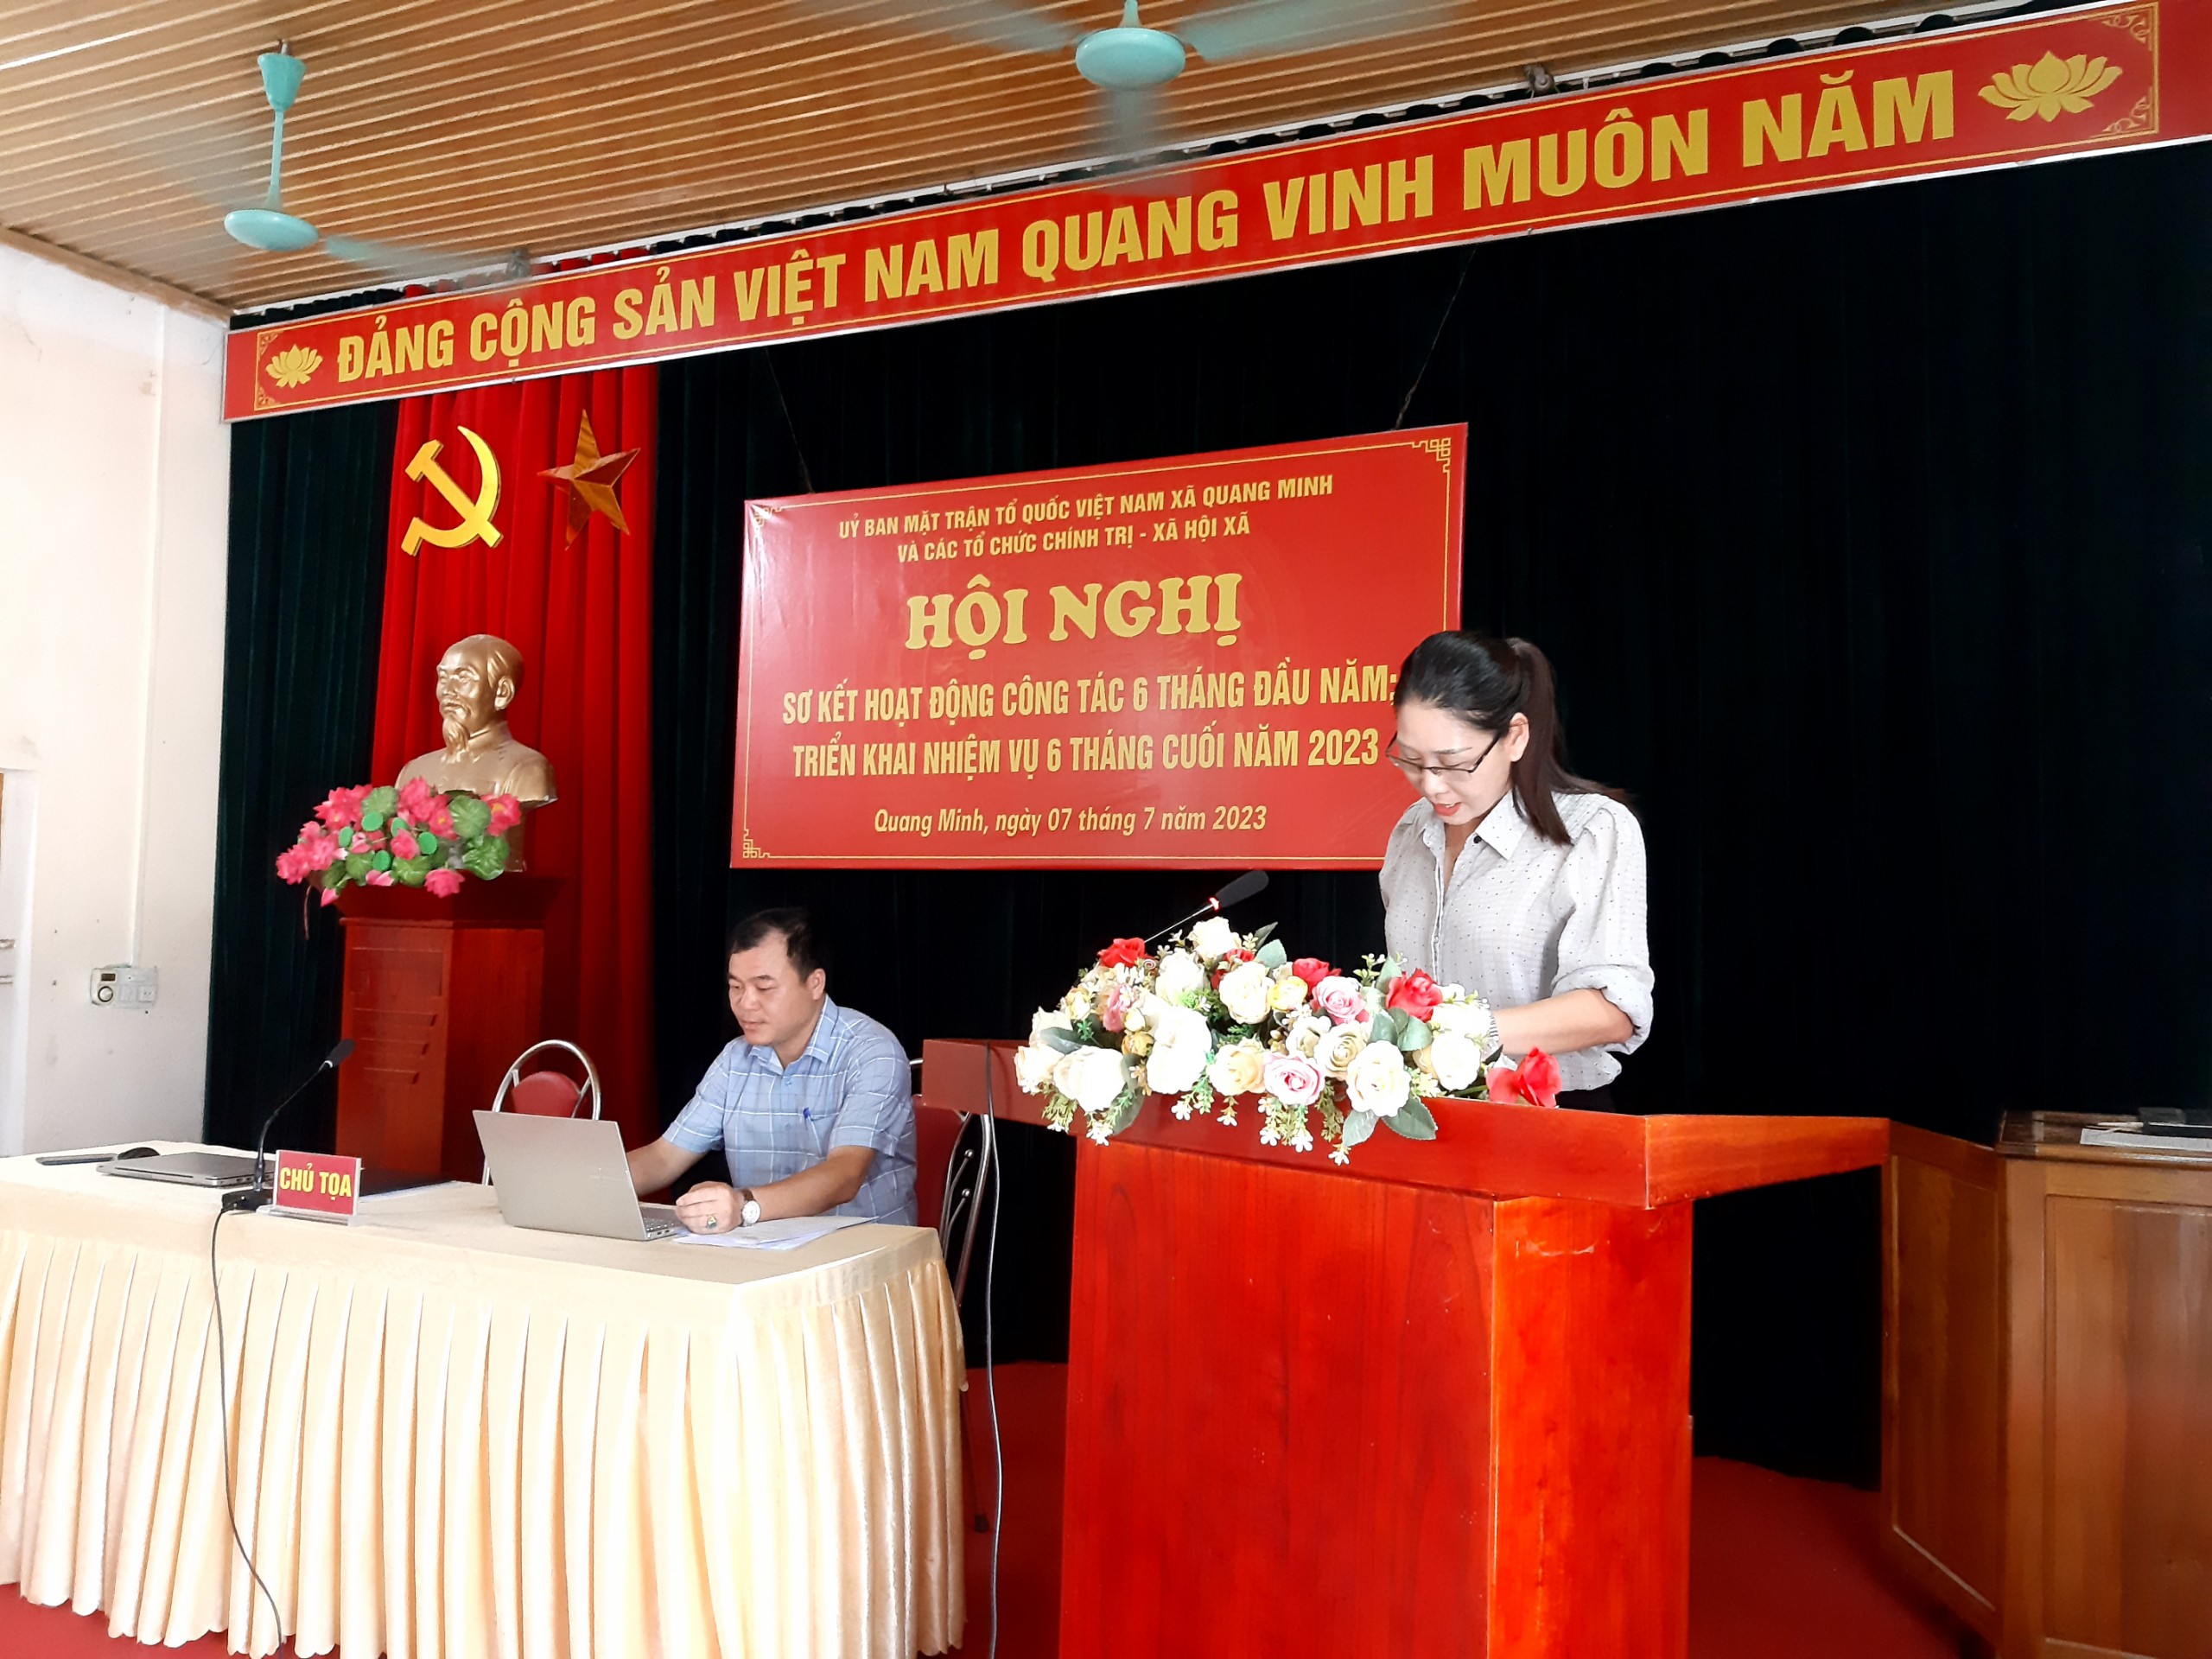 Mặt trận Tổ quốc và các tổ chức chính trị - xã hội xã Quang Minh tổ chức Hội nghị sơ kết hoạt động công tác 6 tháng đầu năm, triển khai nhiệm vụ 6 tháng cuối năm 2023